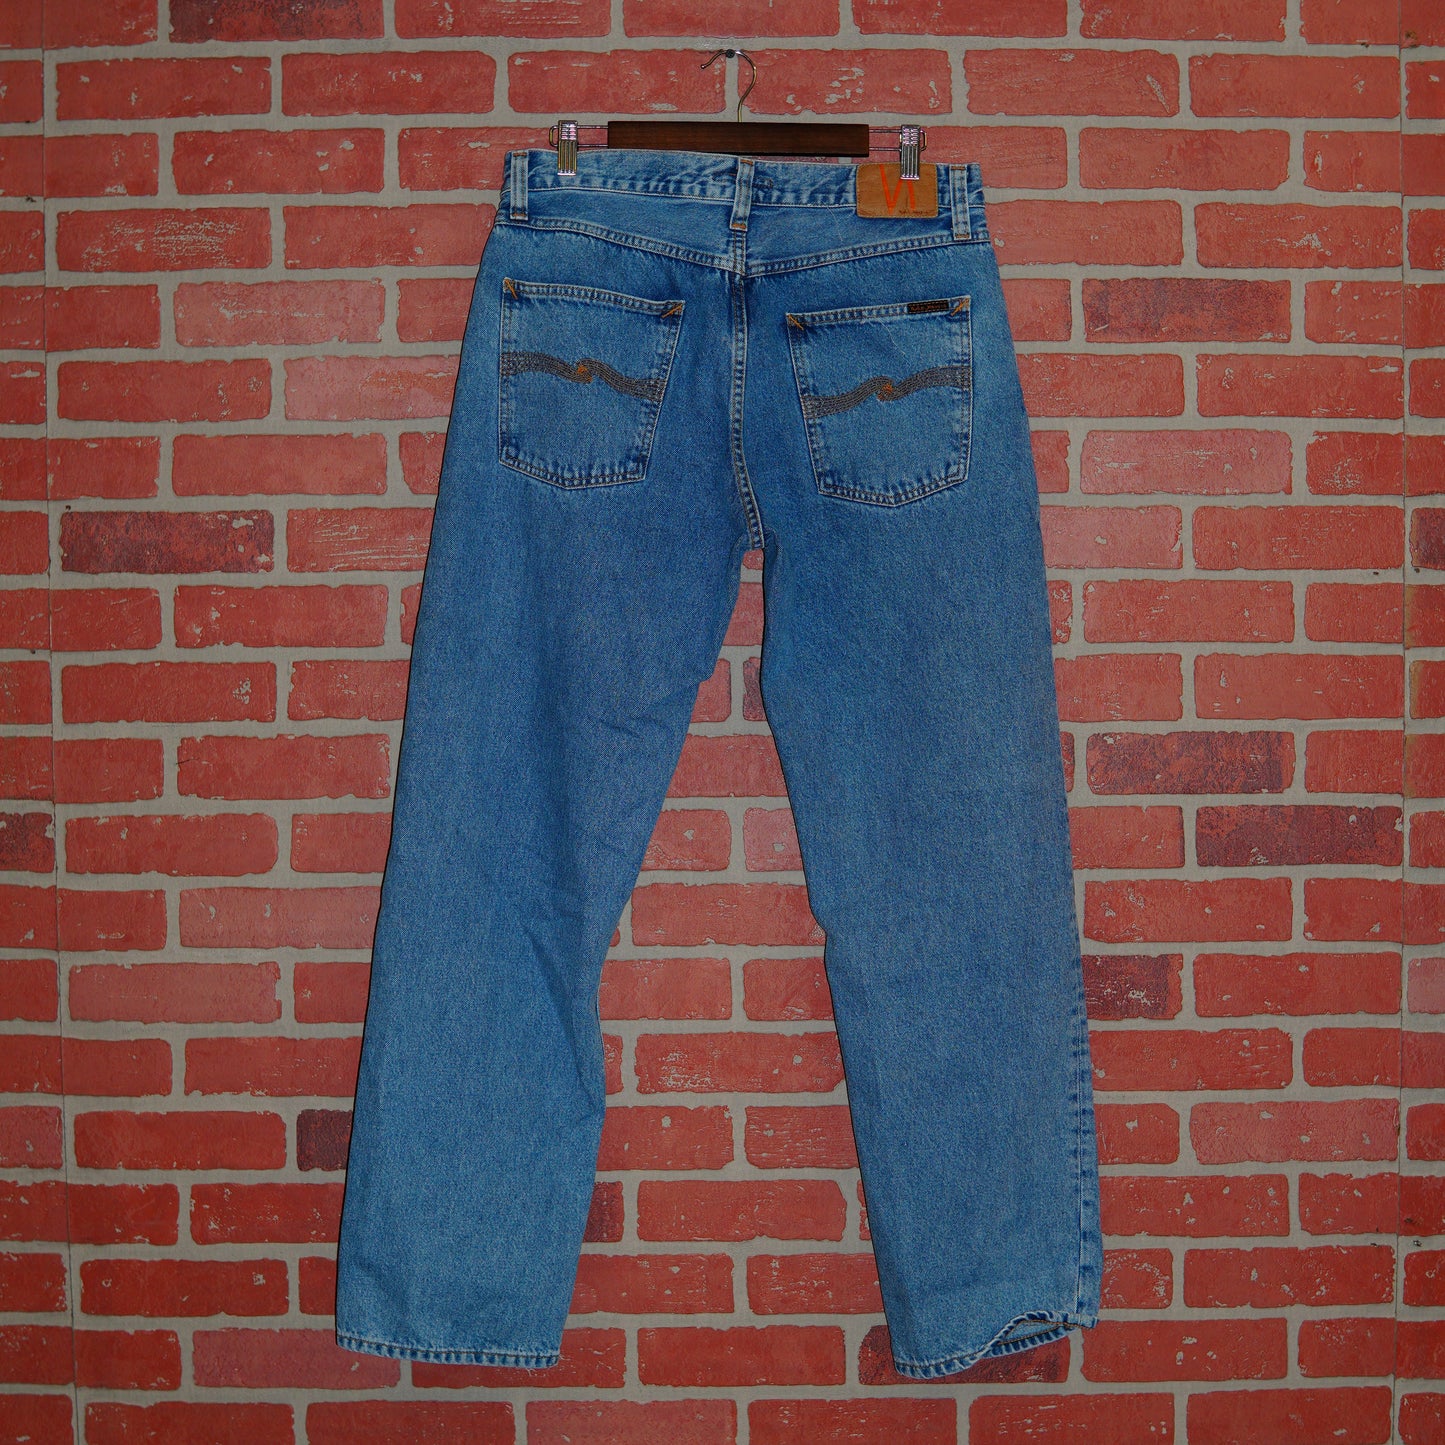 VTG Nudie Jeans Blue Denim Pants